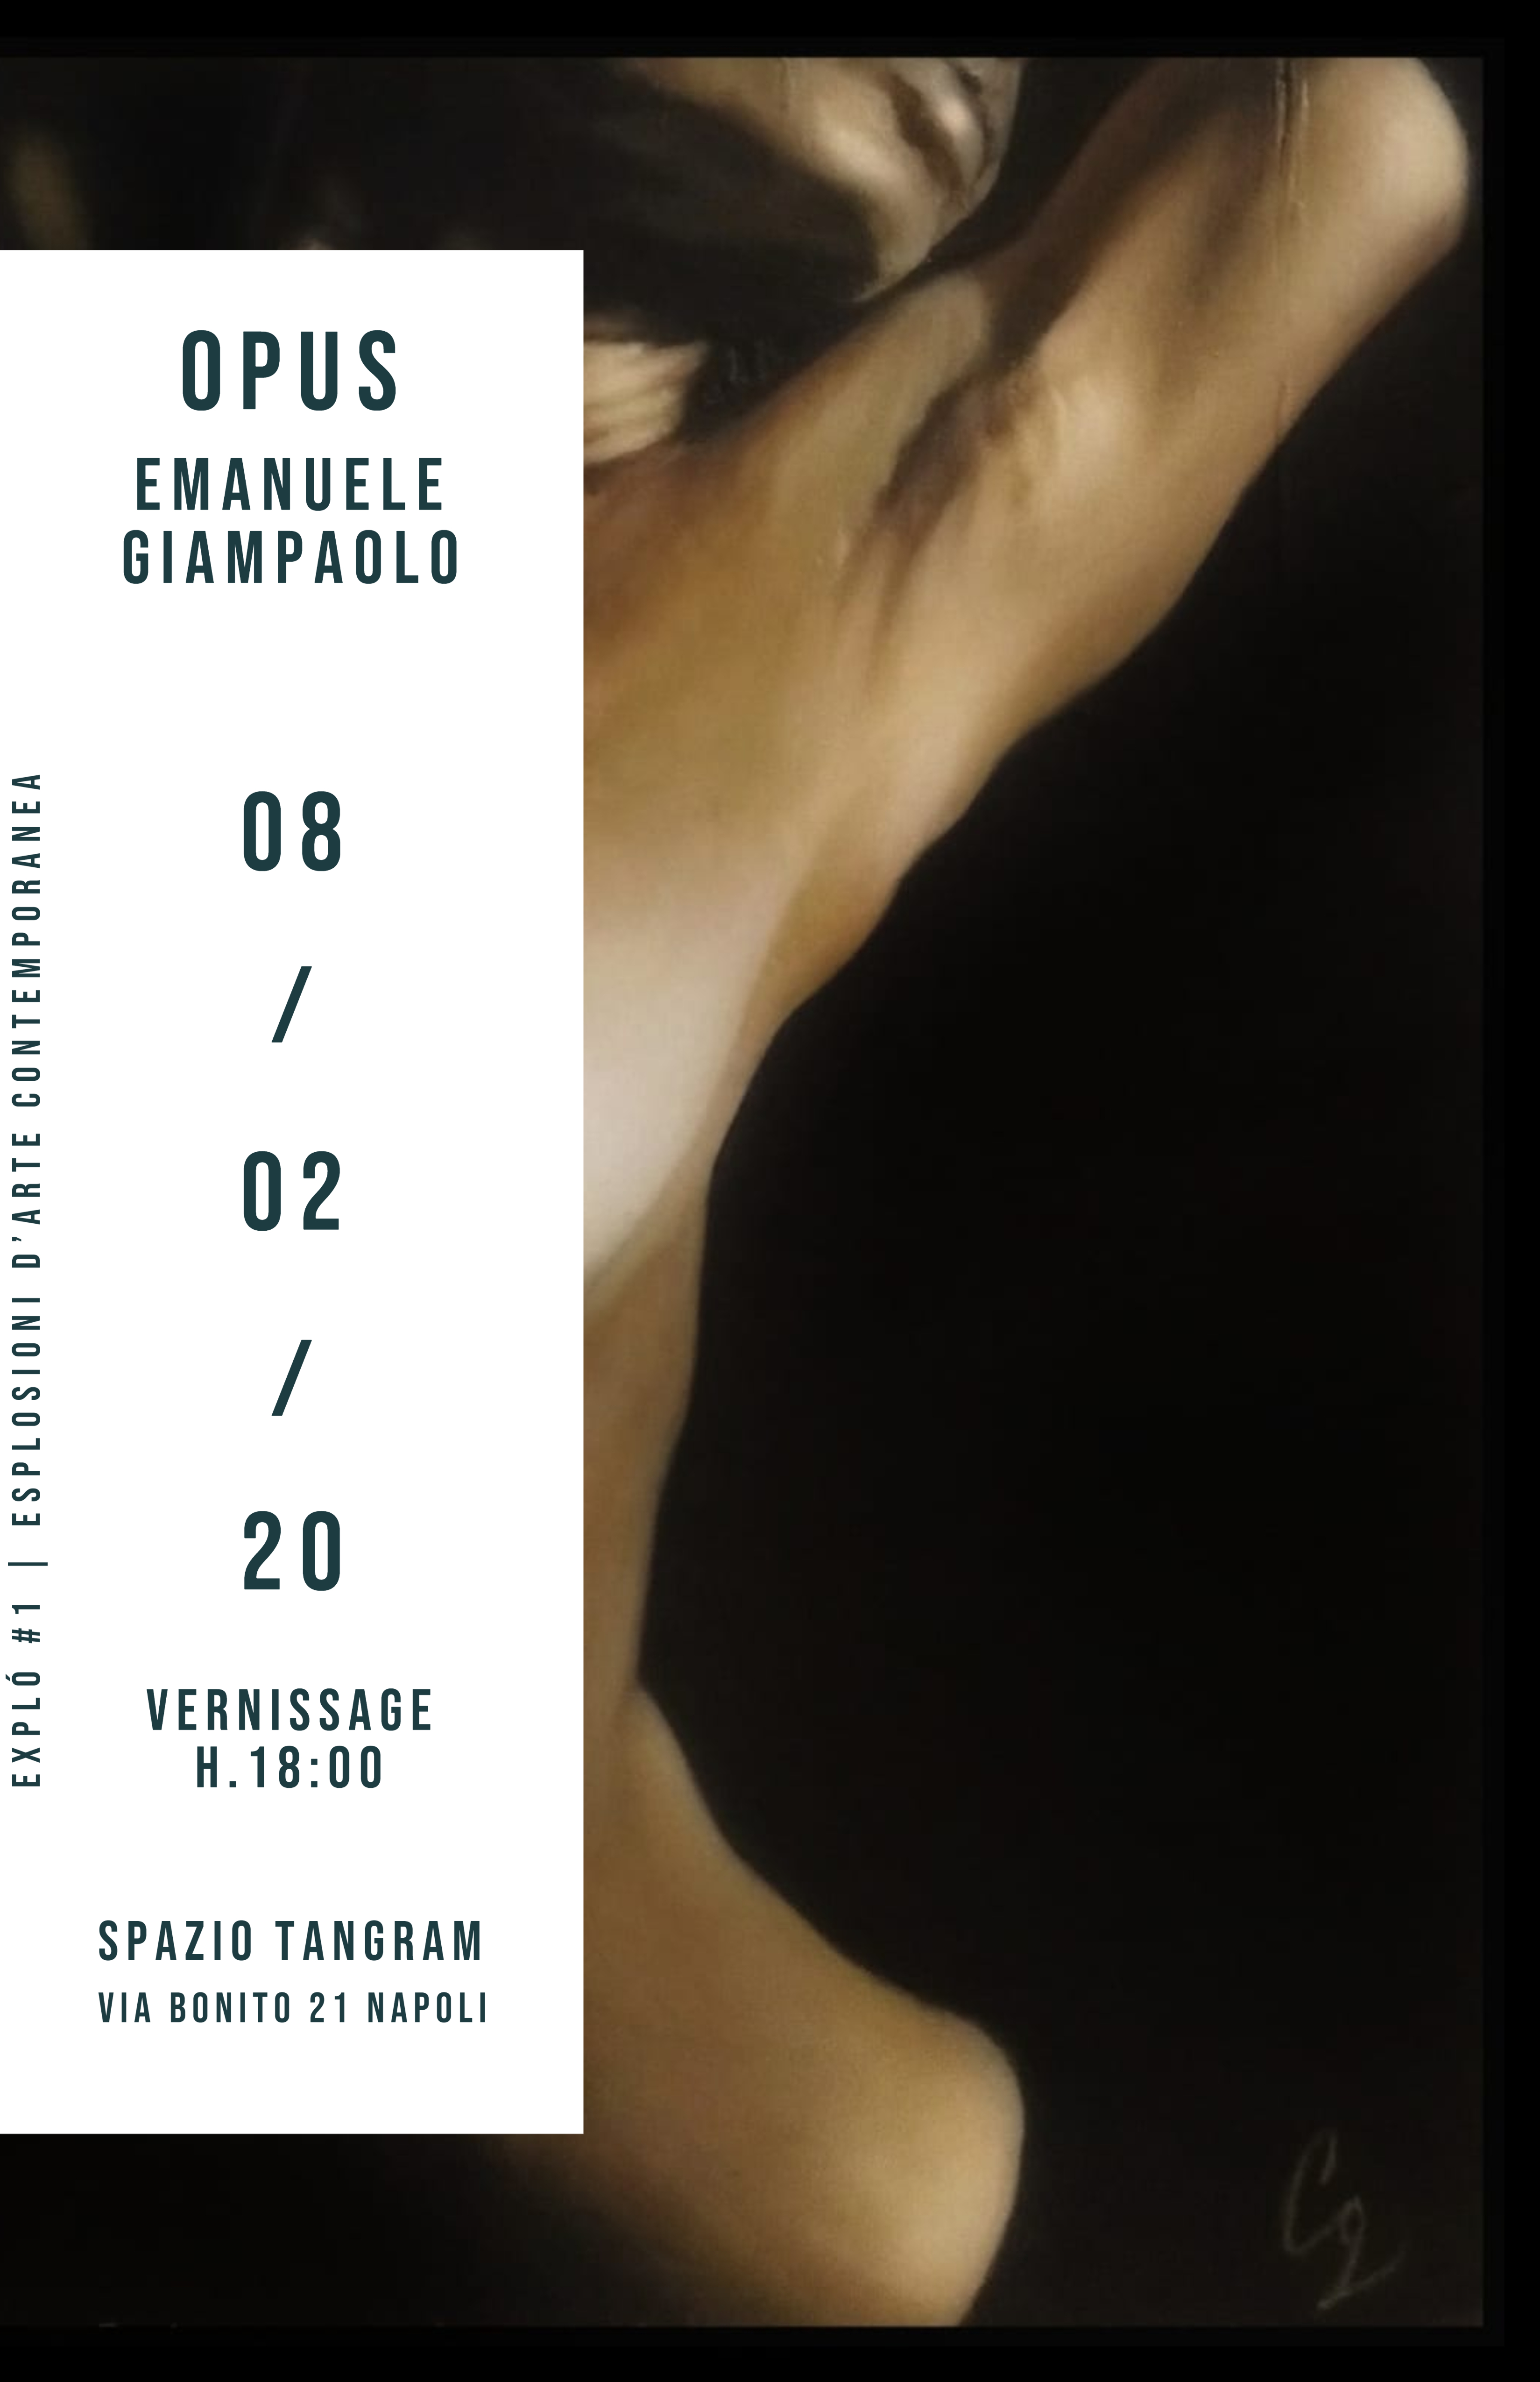 Explò - Esplosioni d'arte #1: Opus di Emanuele Giampaolo